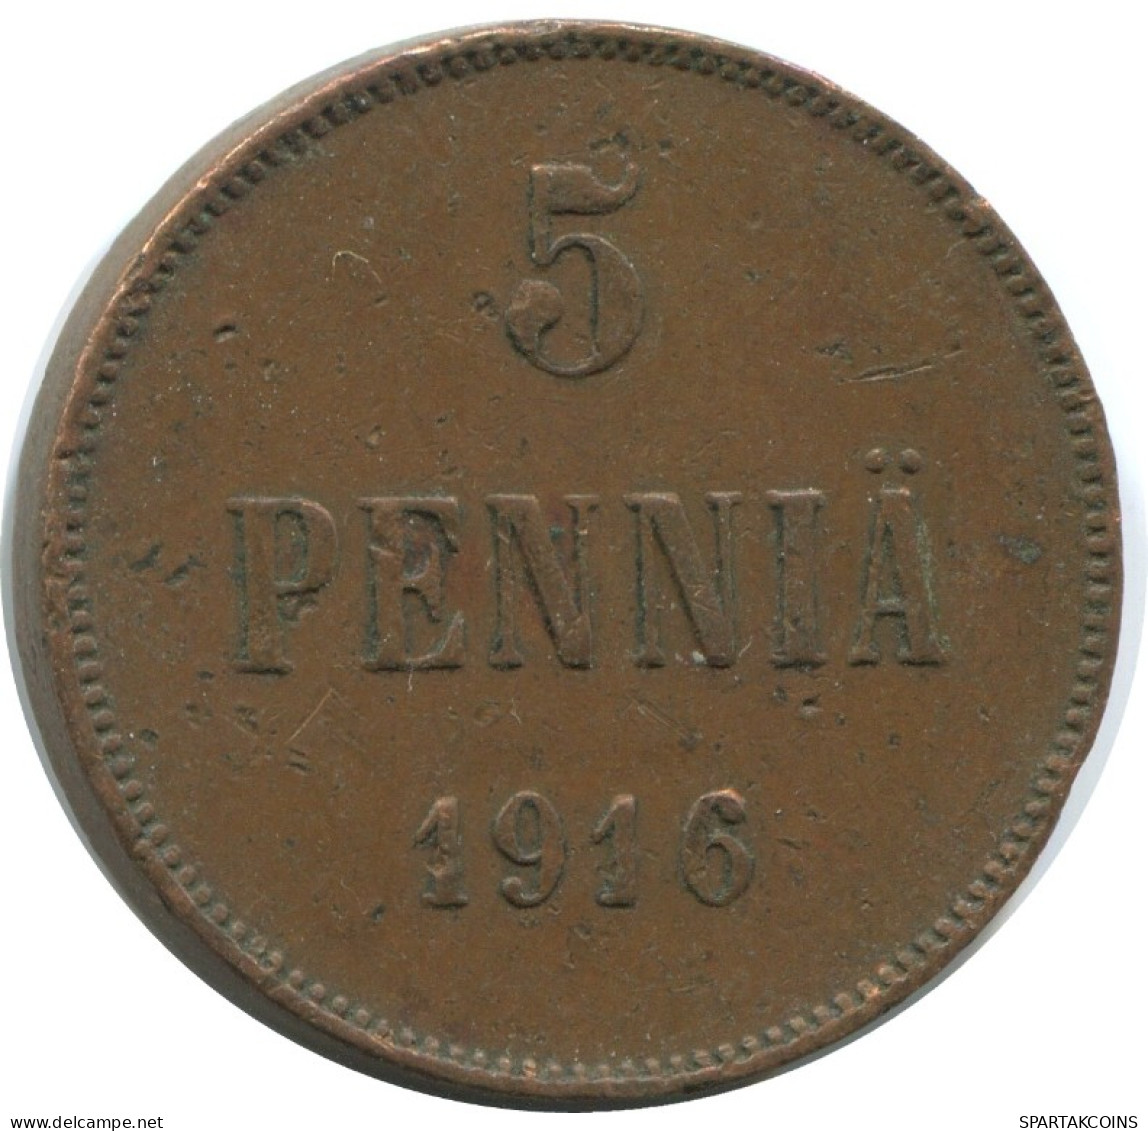 5 PENNIA 1916 FINLAND Coin RUSSIA EMPIRE #AB252.5.U.A - Finlandia